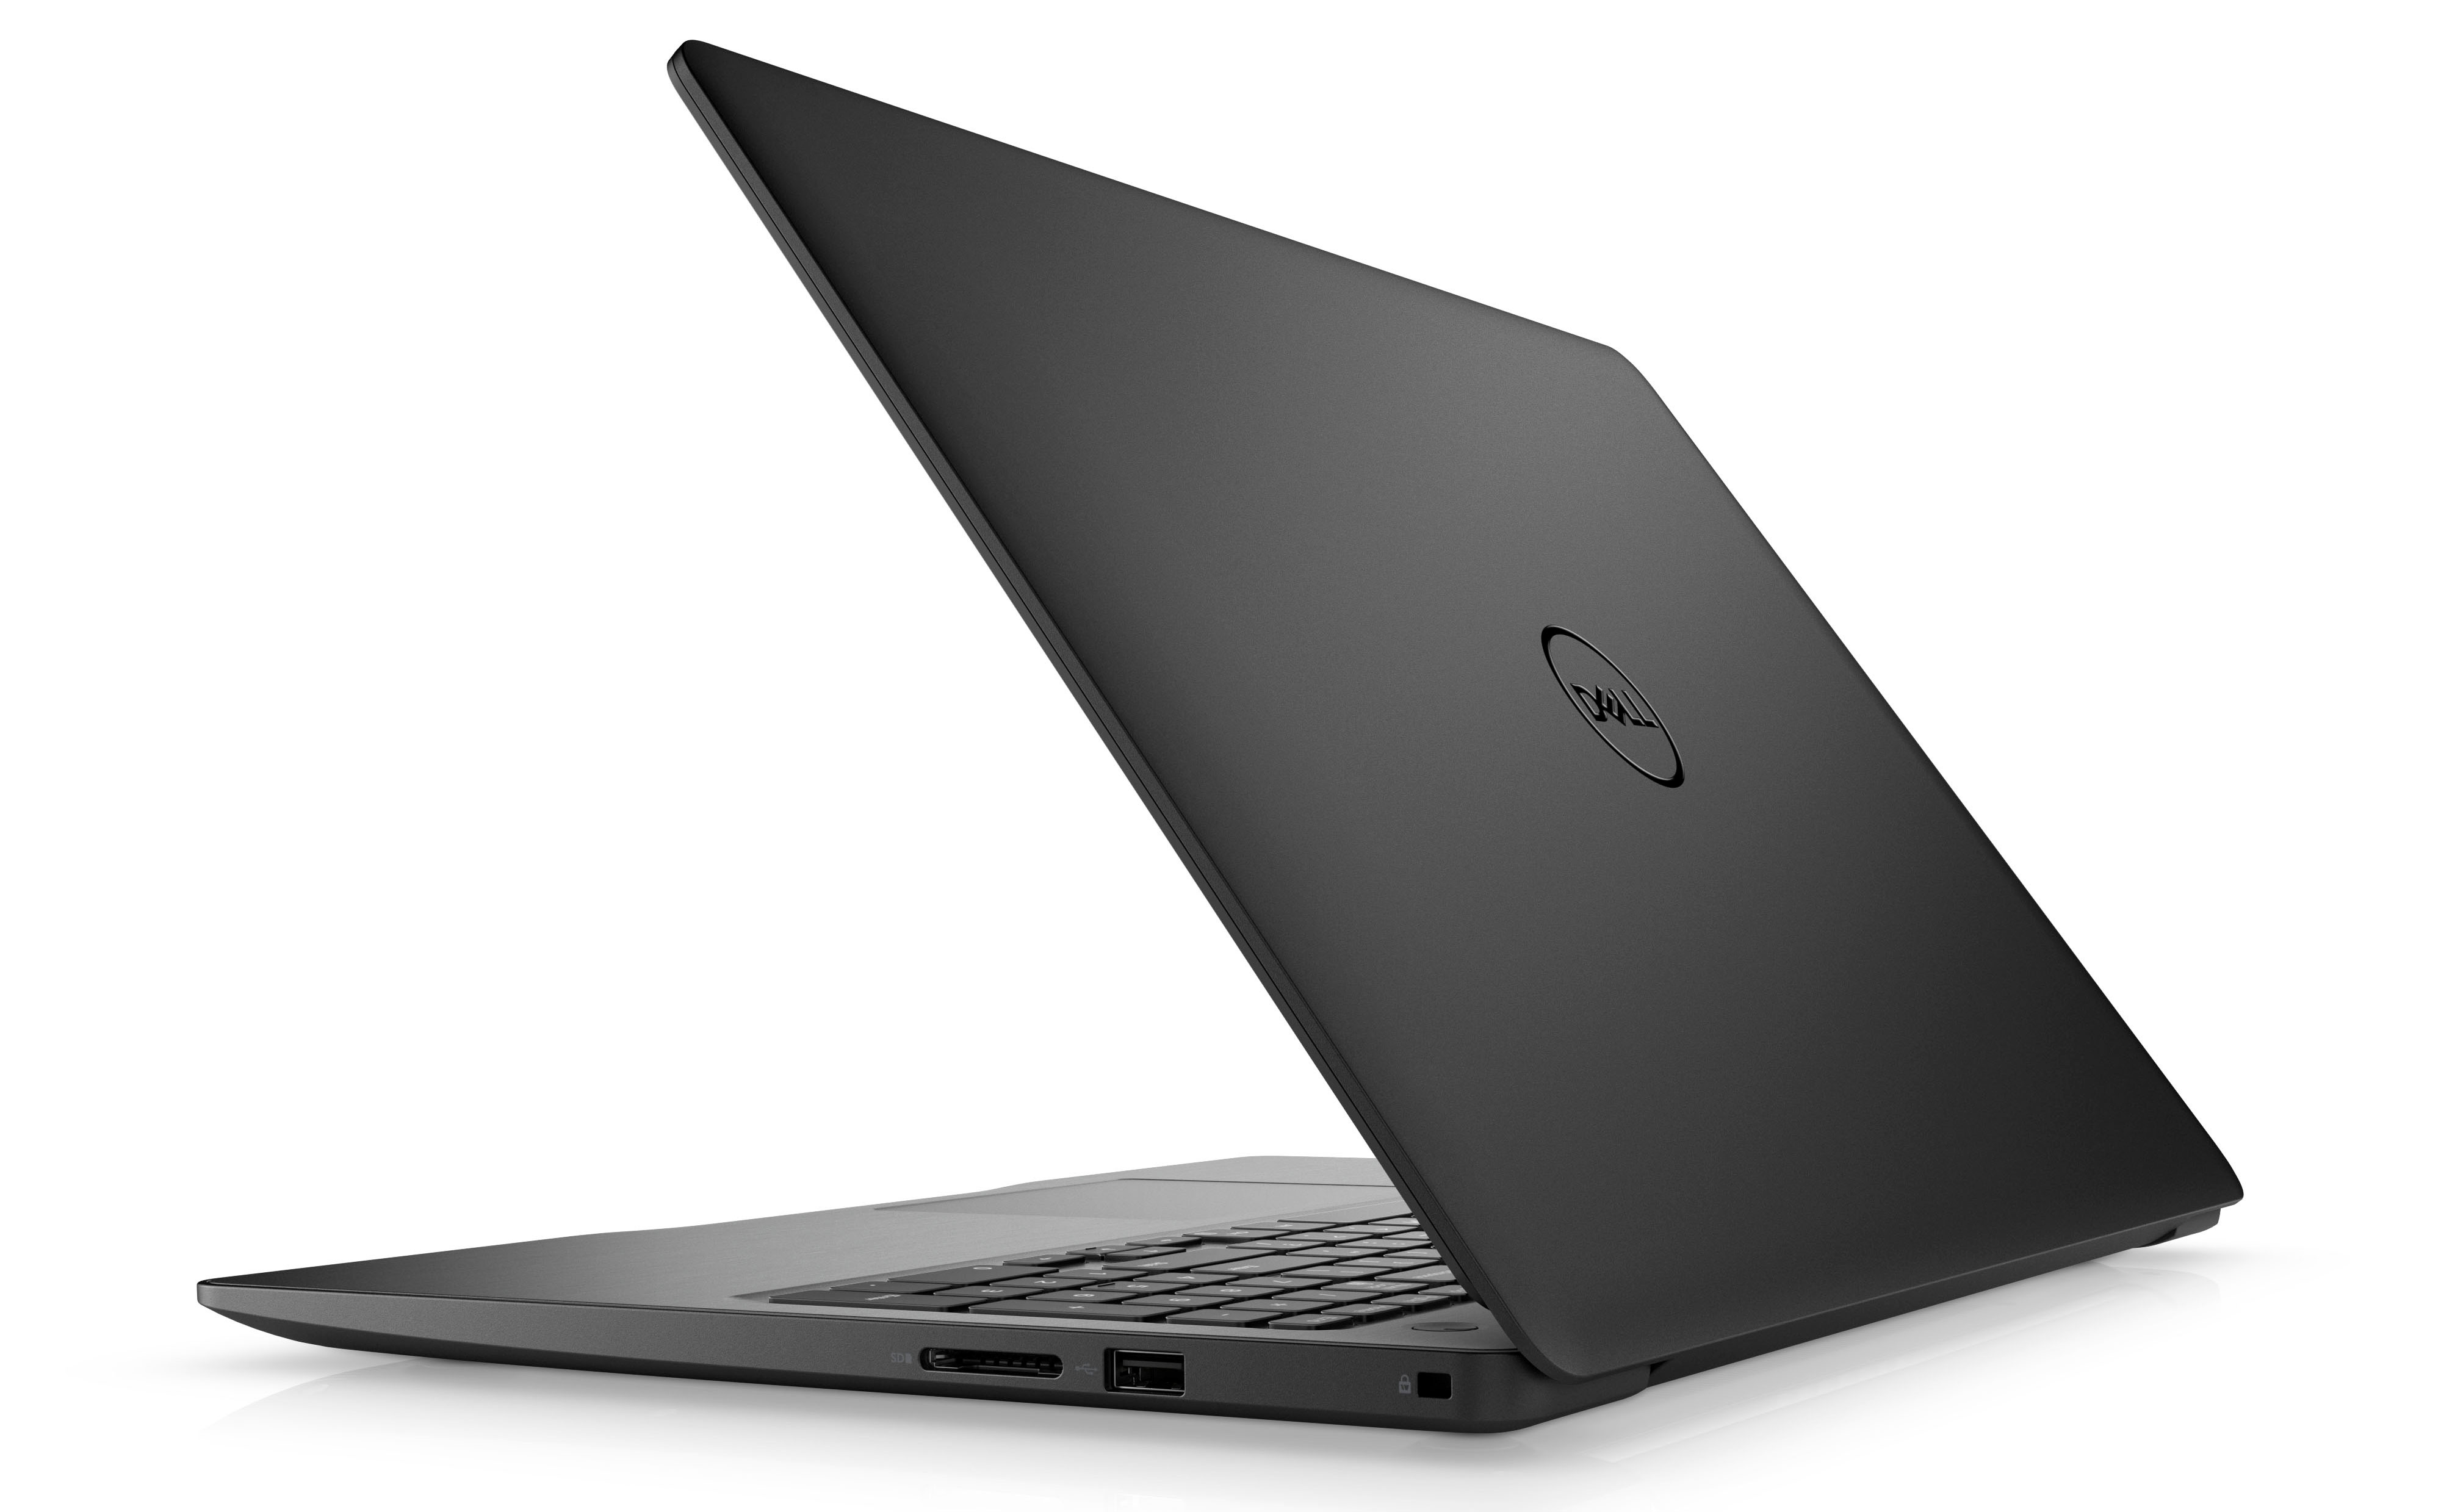 Notebook Dell Inspiron 15 5000 Series ตอบโจทย์การใช้งานและความบันเทิง